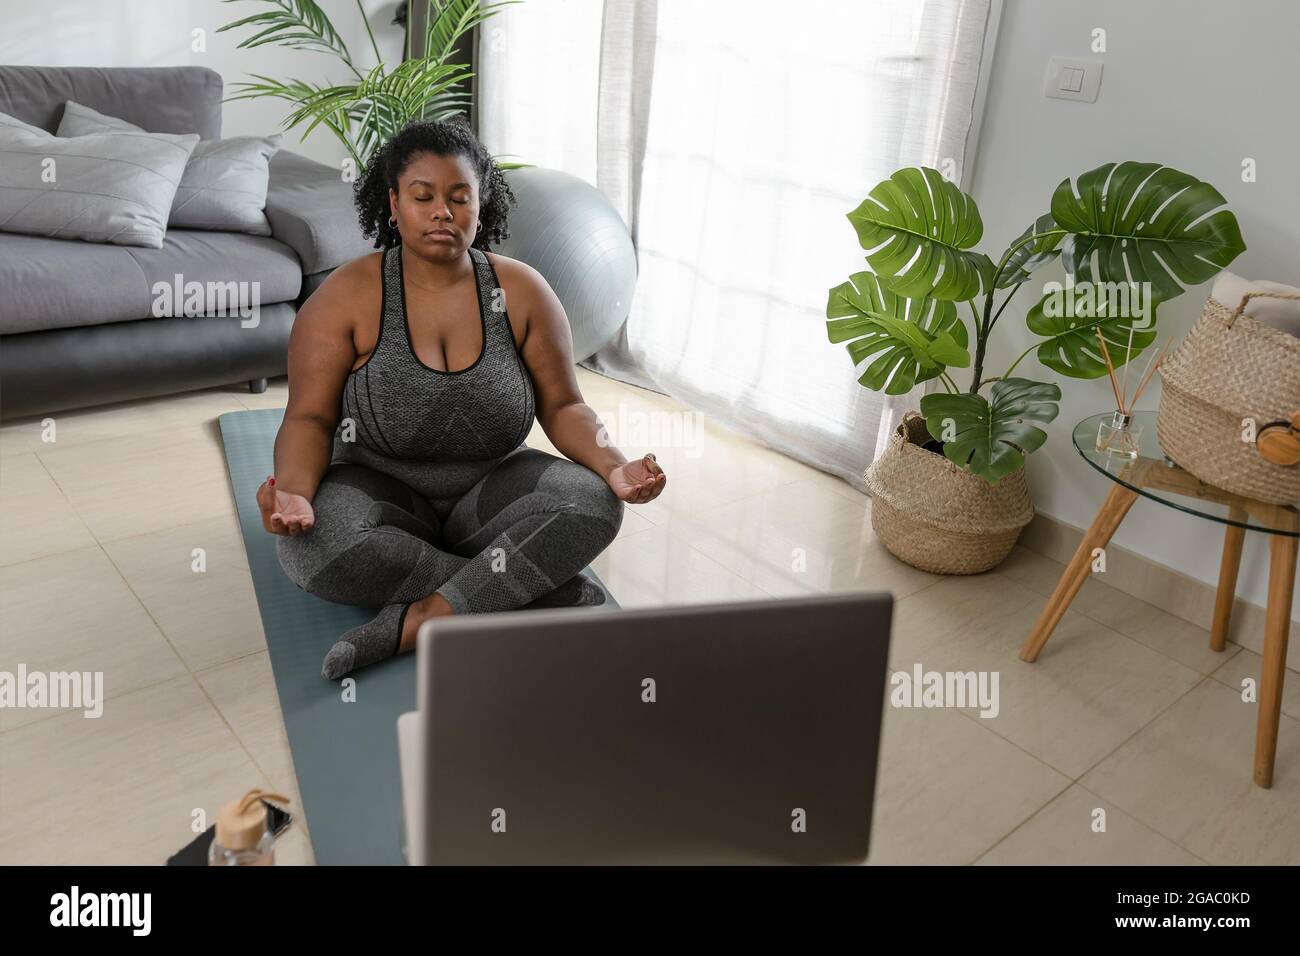 Junge afrikanische kurvige Frau macht Yoga virtuelle Fitness-Klasse mit Laptop zu Hause - Sport Wellness Menschen Lifestyle-Konzept Stockfoto